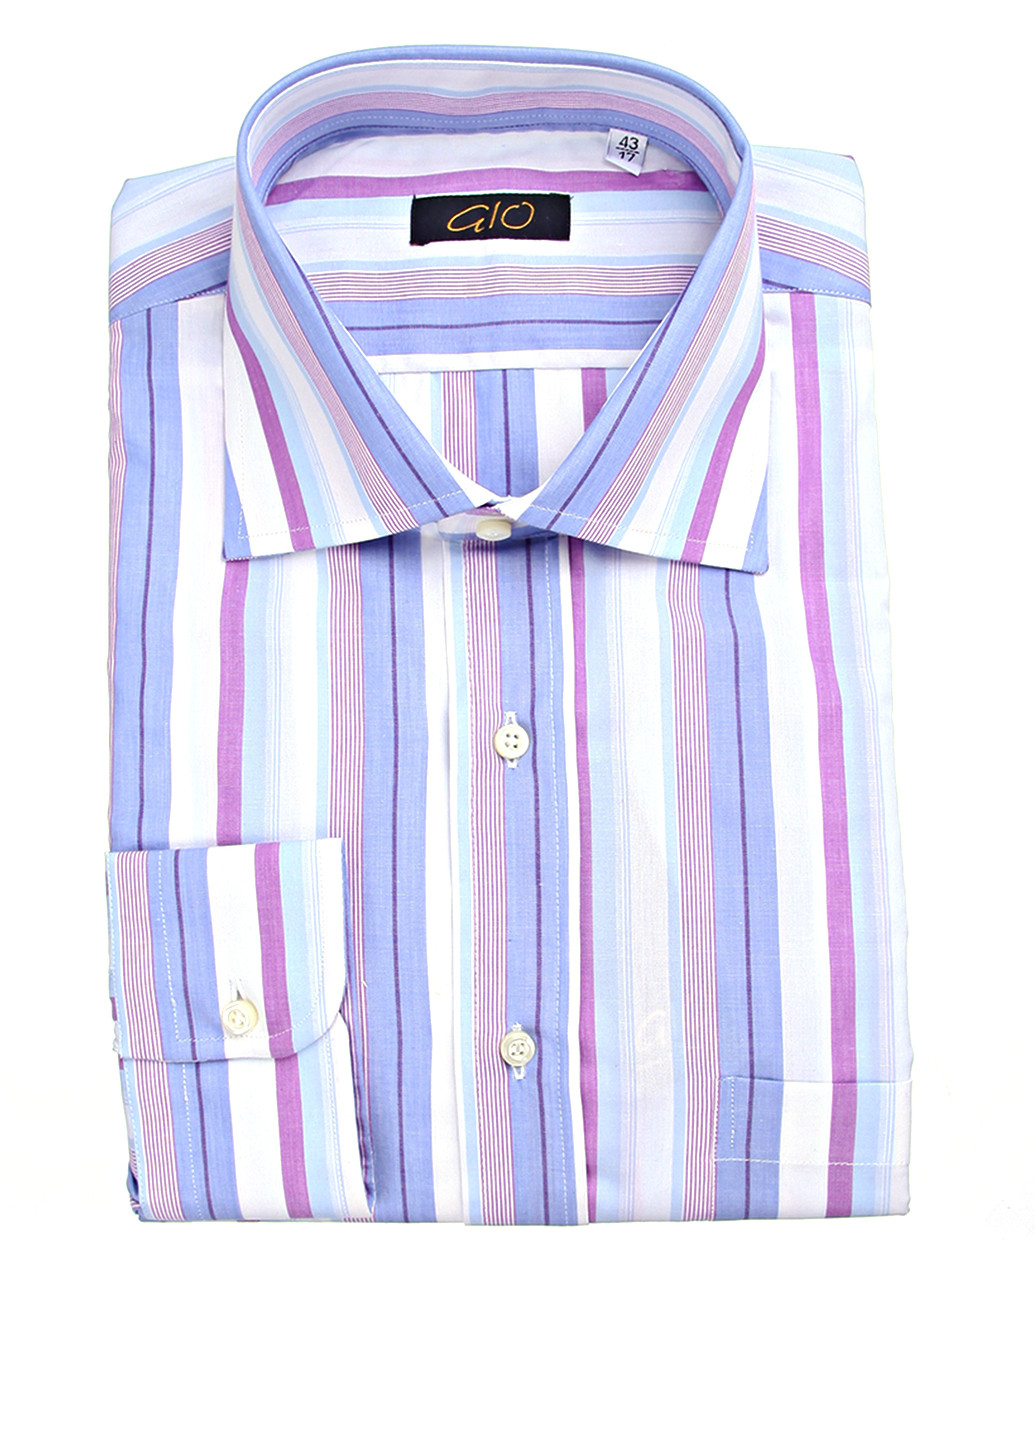 Цветная классическая рубашка Gio с длинным рукавом